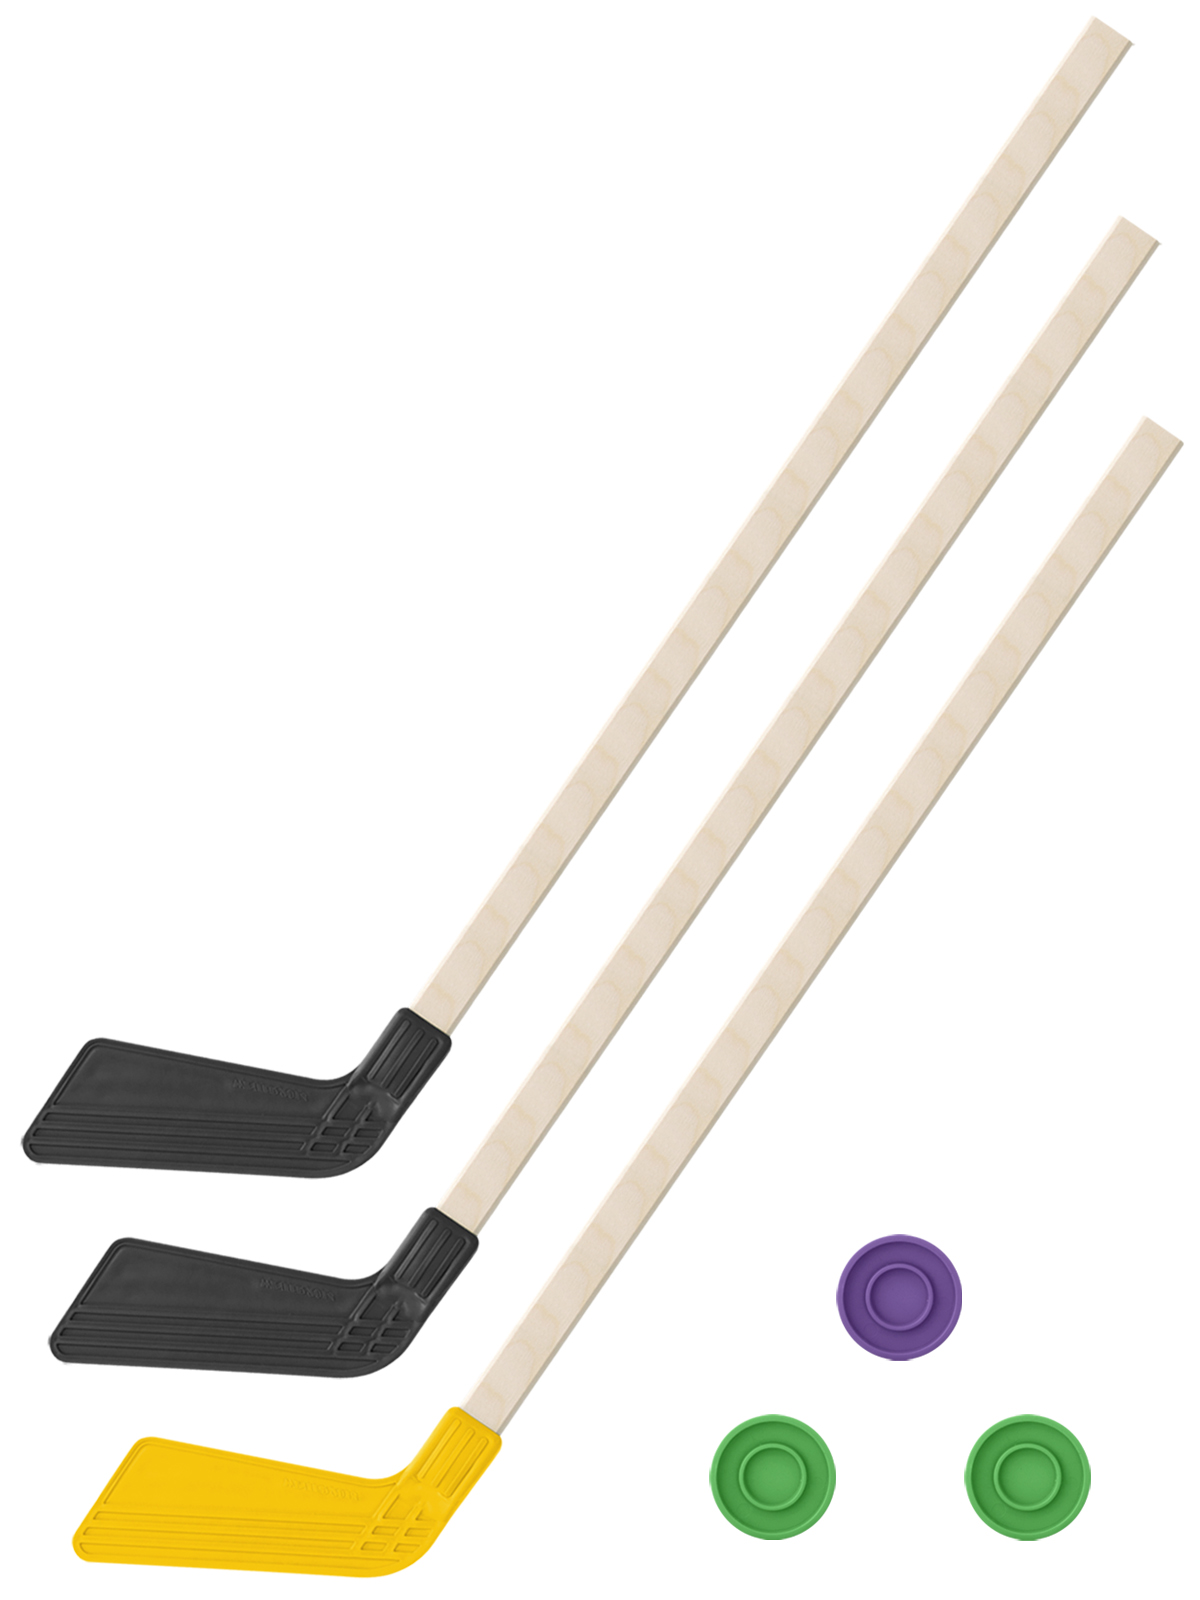 фото Хоккейный набор 3 в1 задира-плюс клюшки 80 см (2 черных, 1 желтая) + 3 шайбы